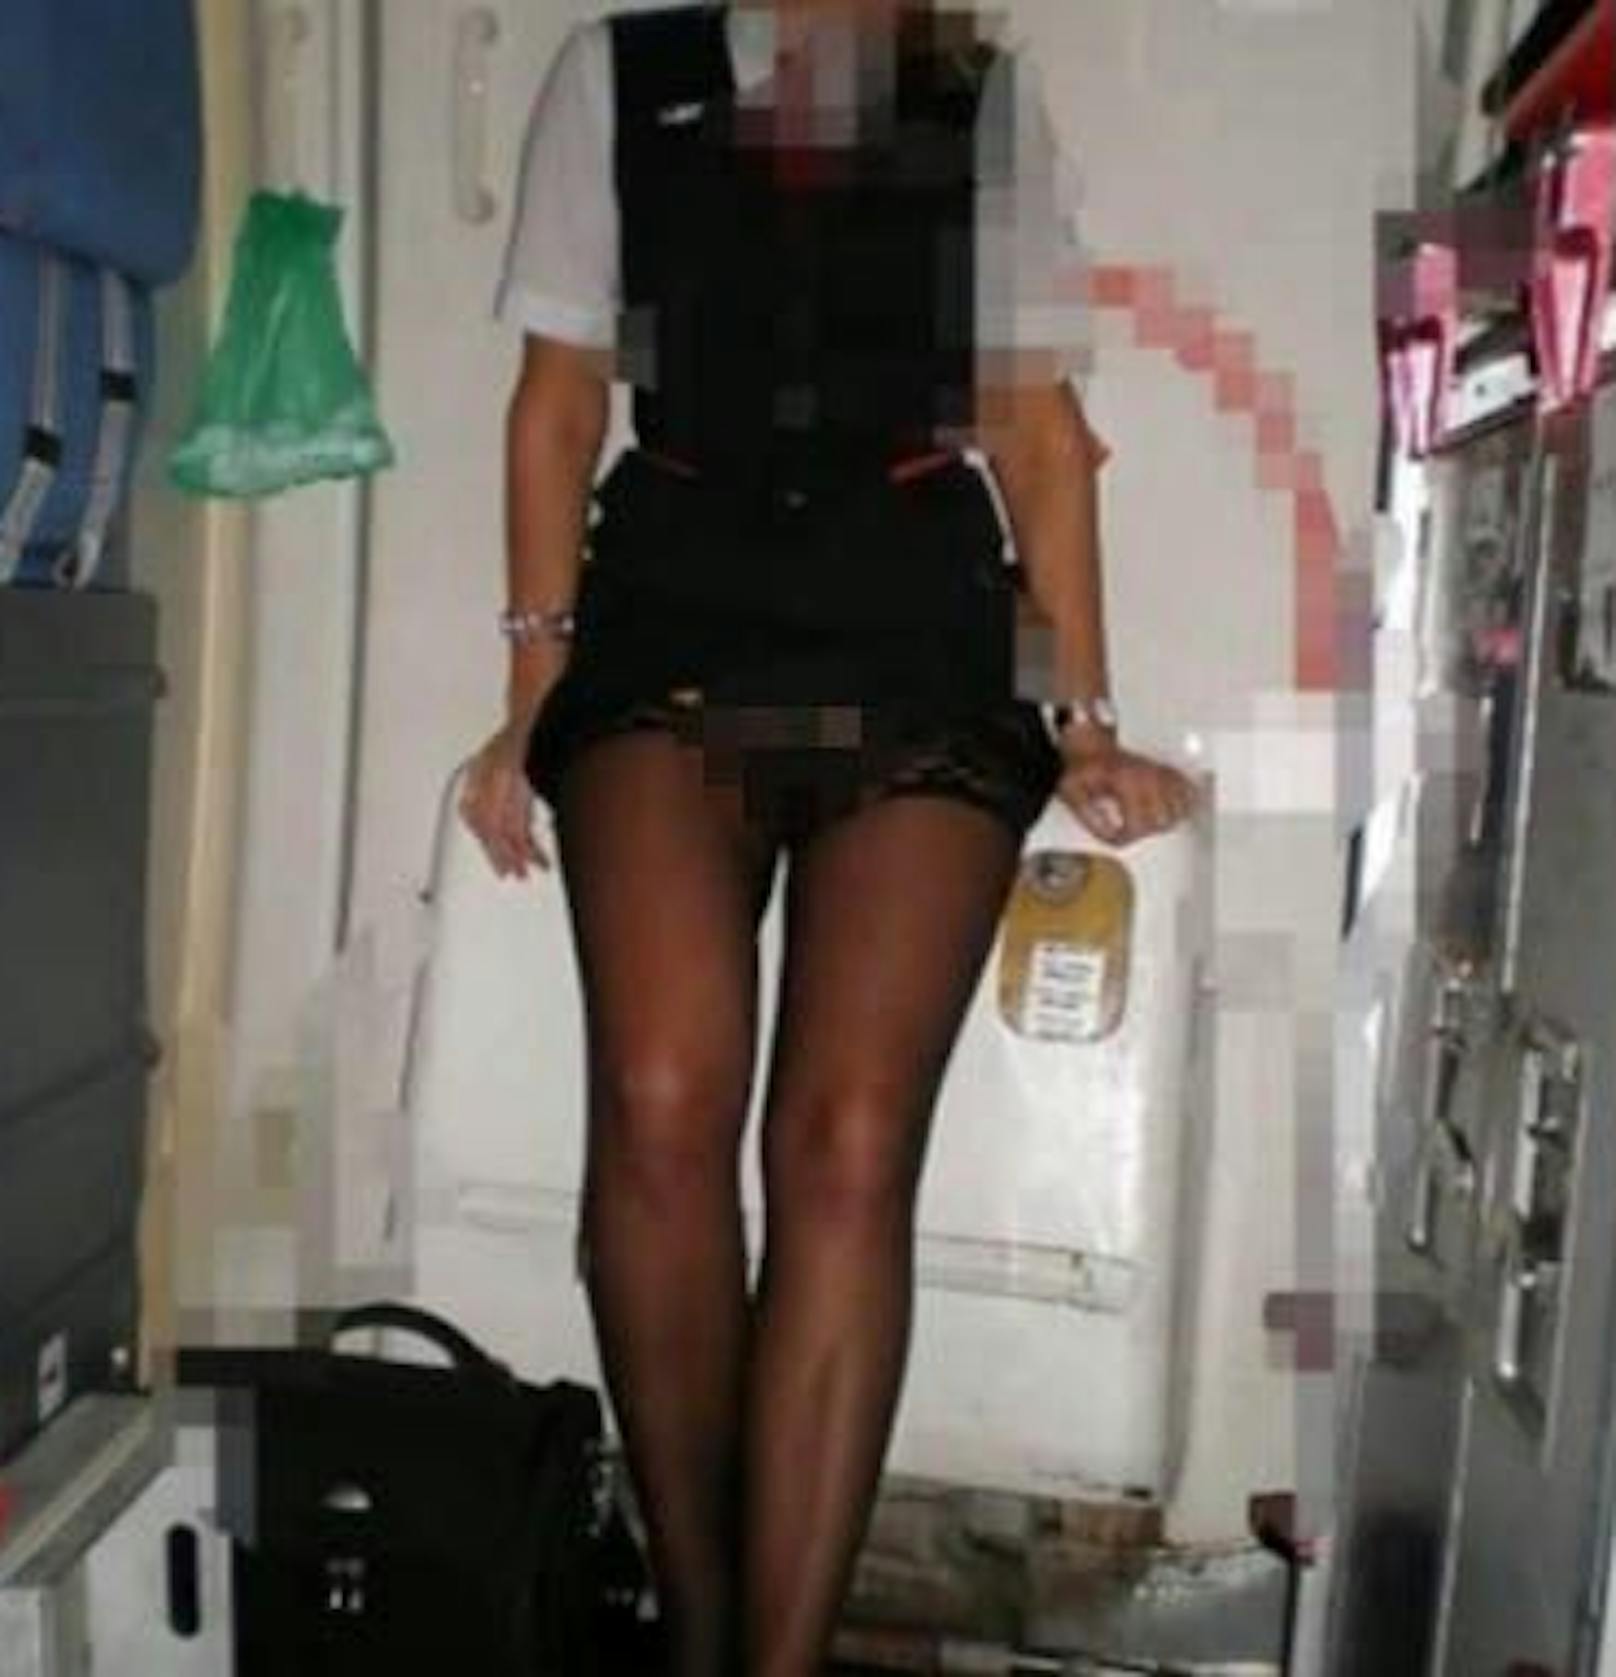 Eine Stewardess von British Airways bot Reisenden vor, während und nach Flügen ihre sexuellen Dienste an. Nun sucht die Fluglinie nach der Frau.